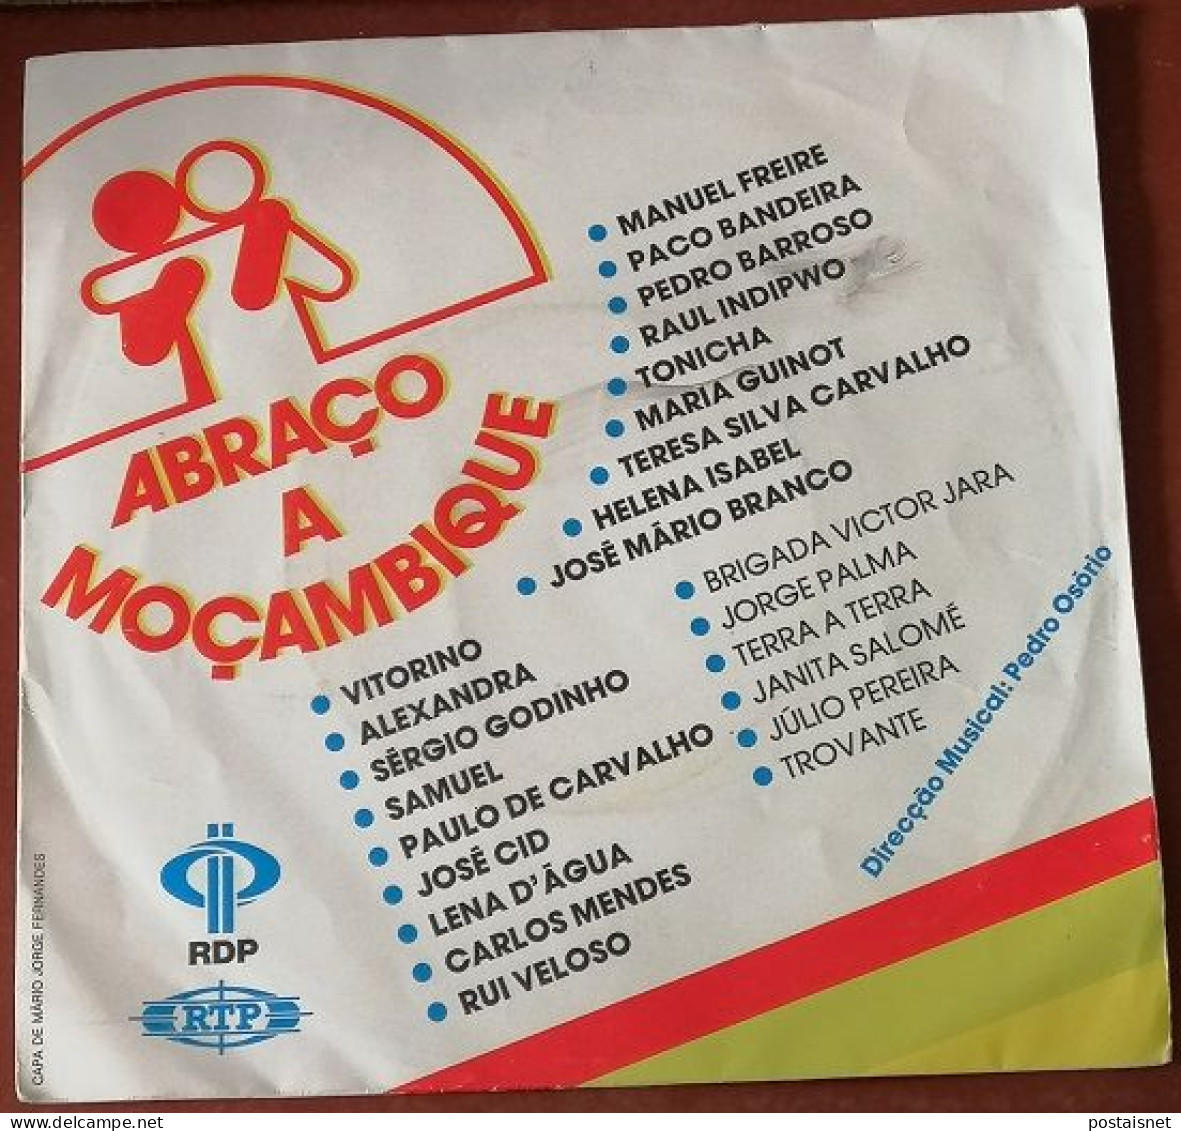 Single Abraço A Moçambique – 1985 – RDP E RTP - Musiques Du Monde